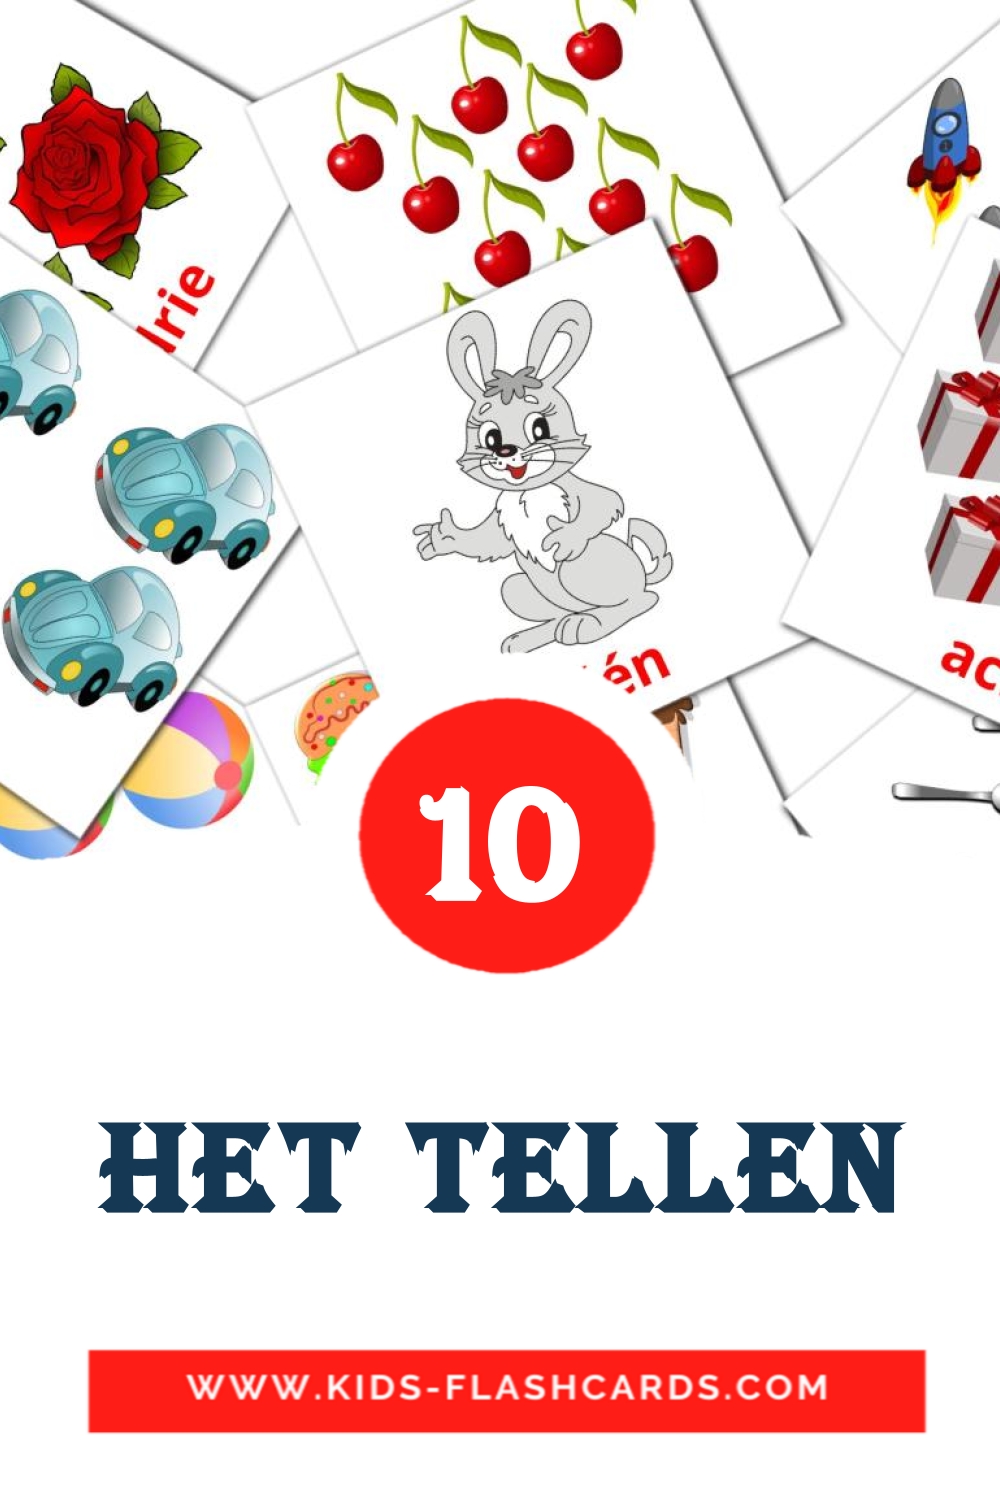 10 Cartões com Imagens de Het tellen para Jardim de Infância em dutch